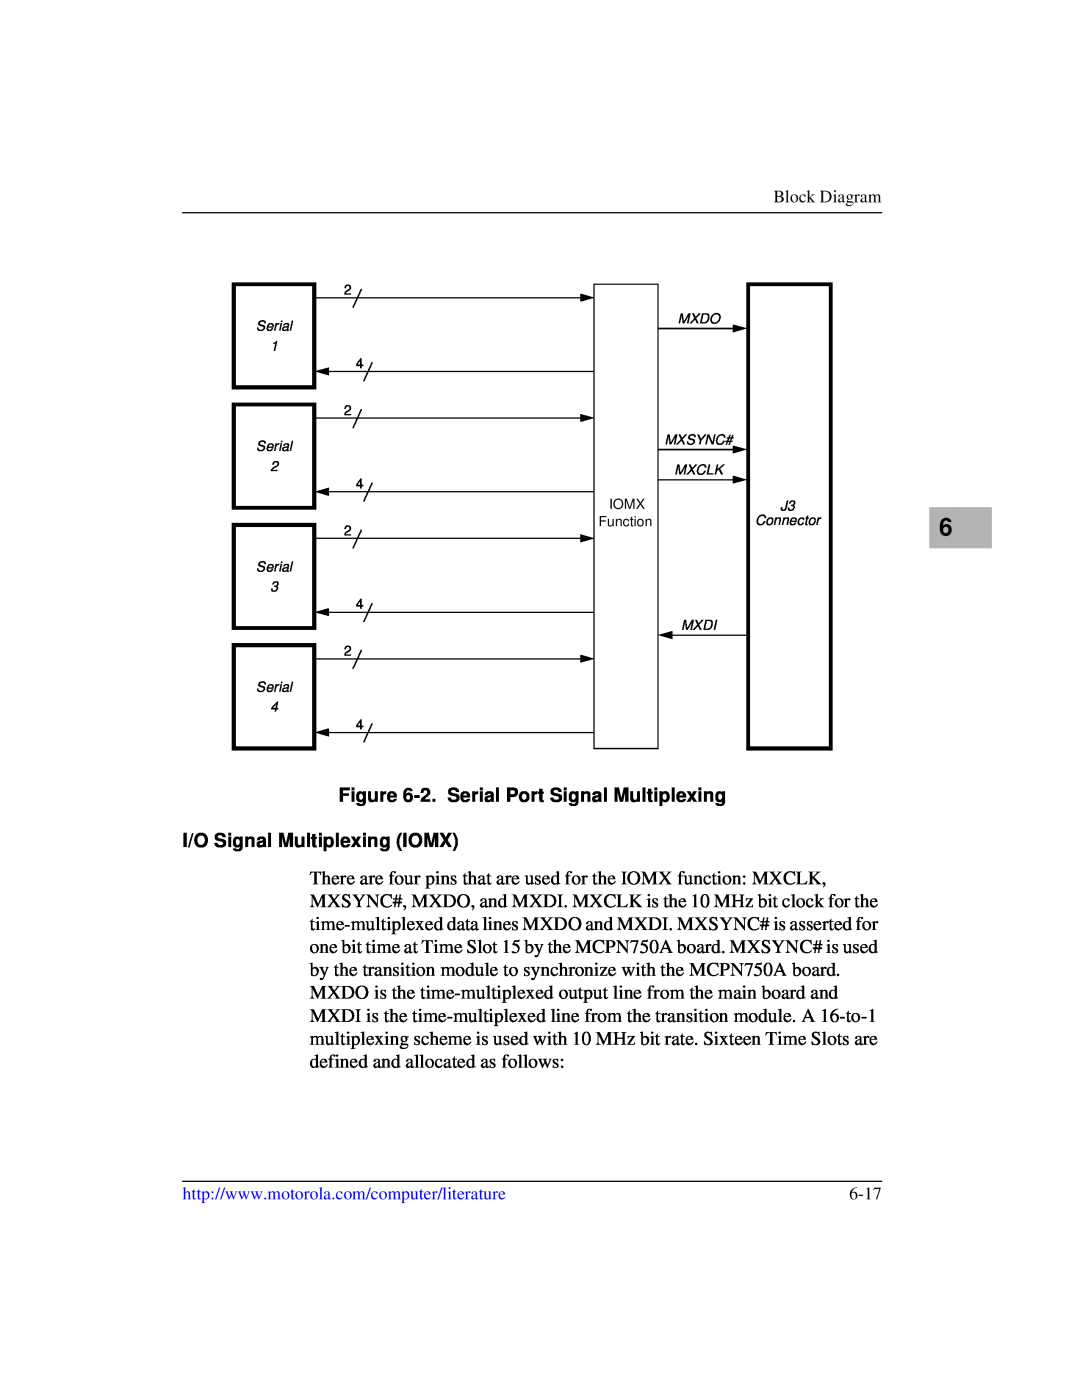 Motorola IH5, MCPN750A manual 2. Serial Port Signal Multiplexing, I/O Signal Multiplexing IOMX, IOMX Function 